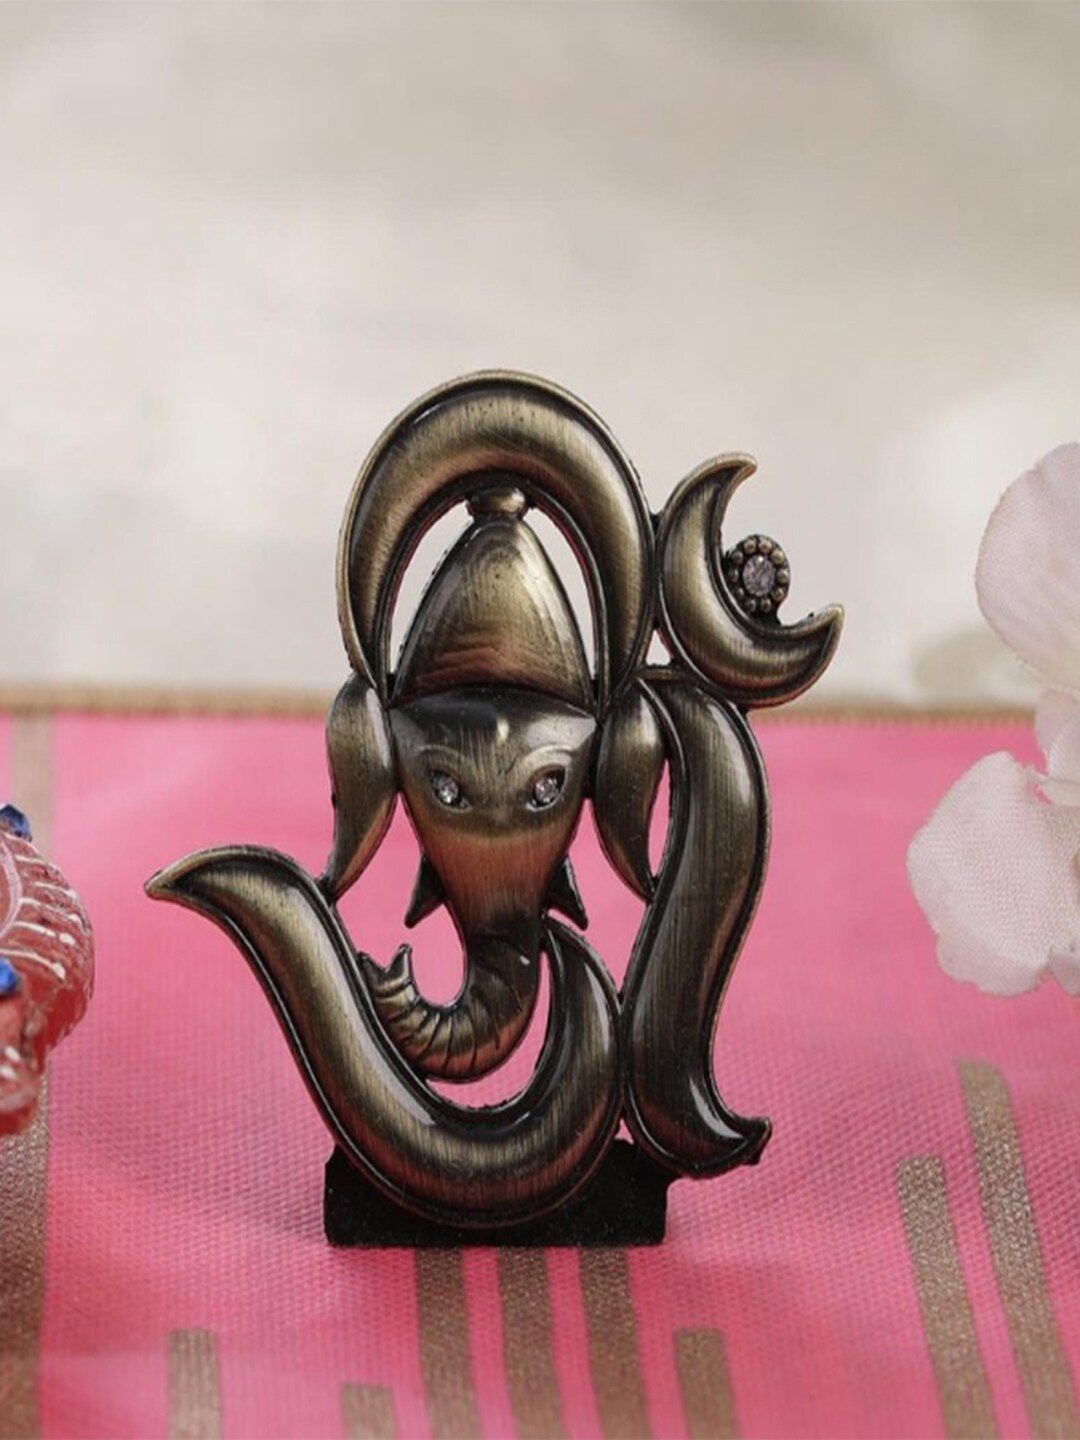 Gallery99 Metallic-Toned  Lord Ganpati Idol Showpiece Price in India